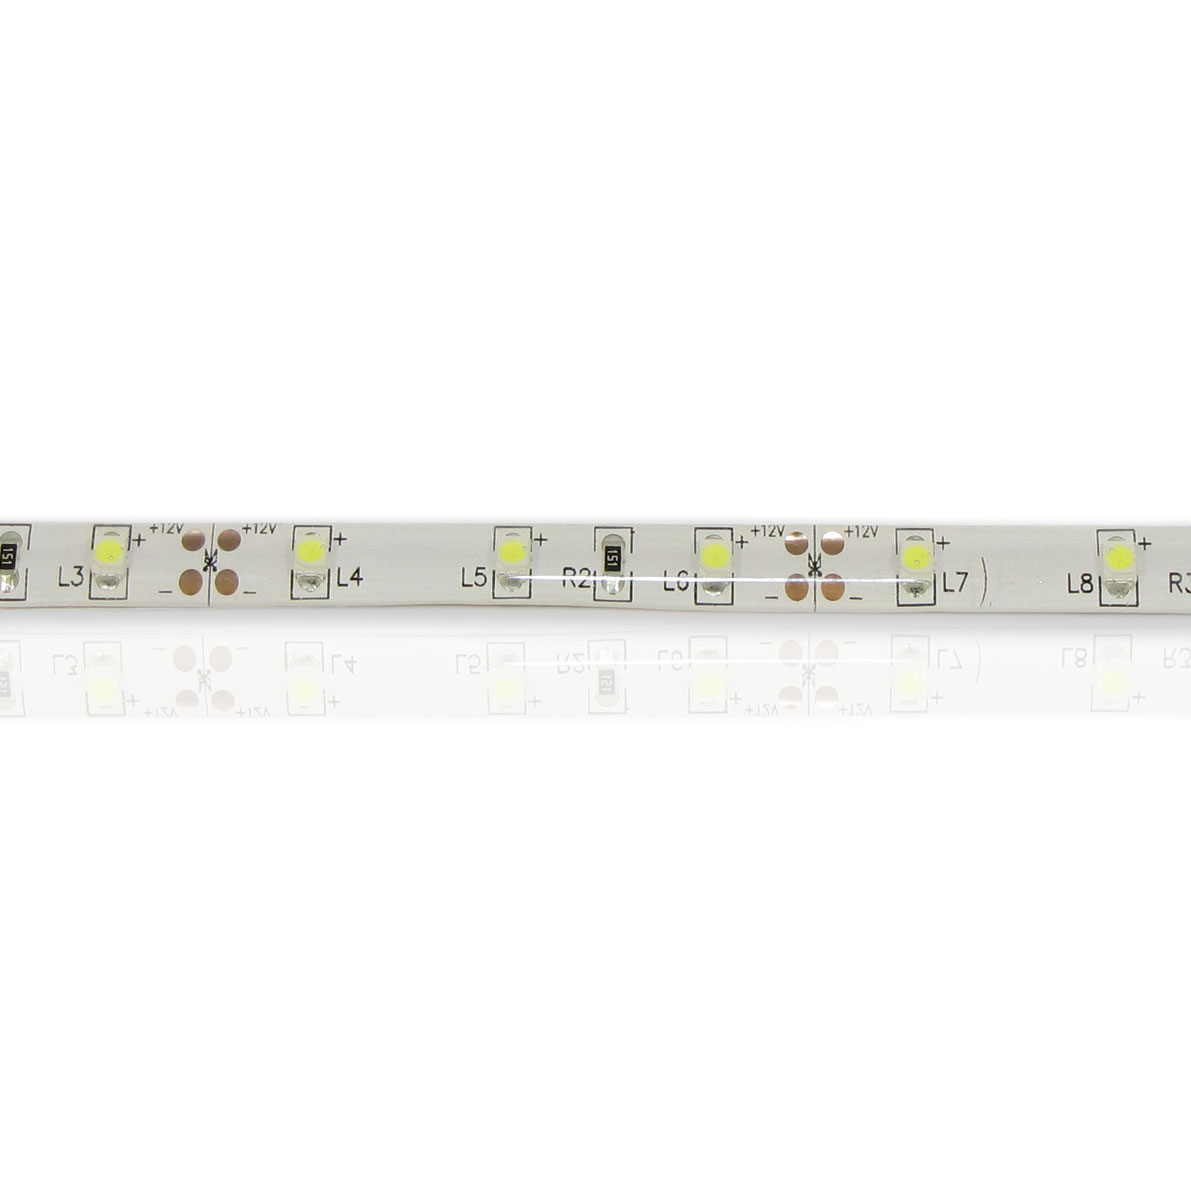 светодиодная лента standart pro class, 3528, 60 led/m, white, 12v, ip65, артикул 28663